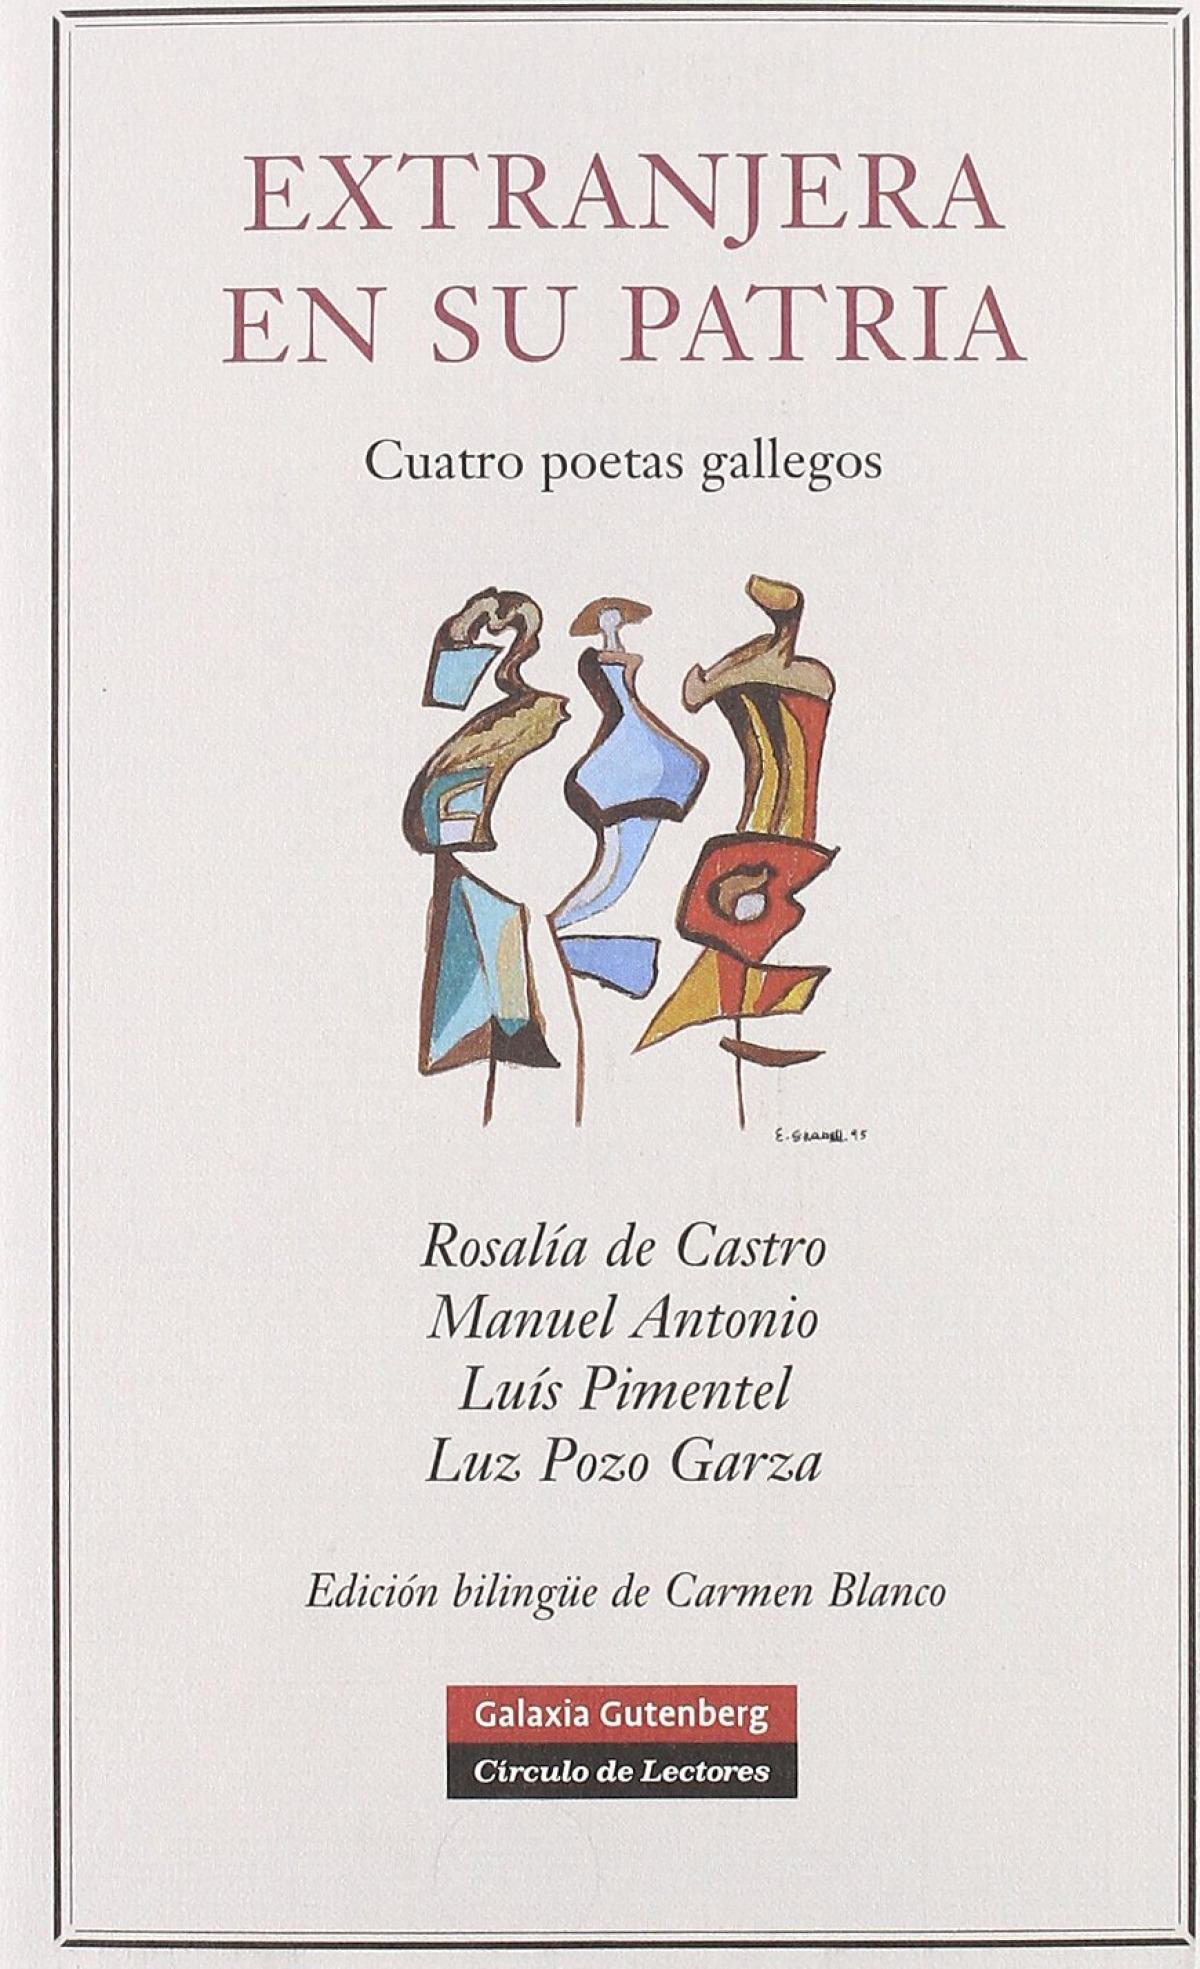 Extranjera en su patria "Cuatro poetas gallegos"